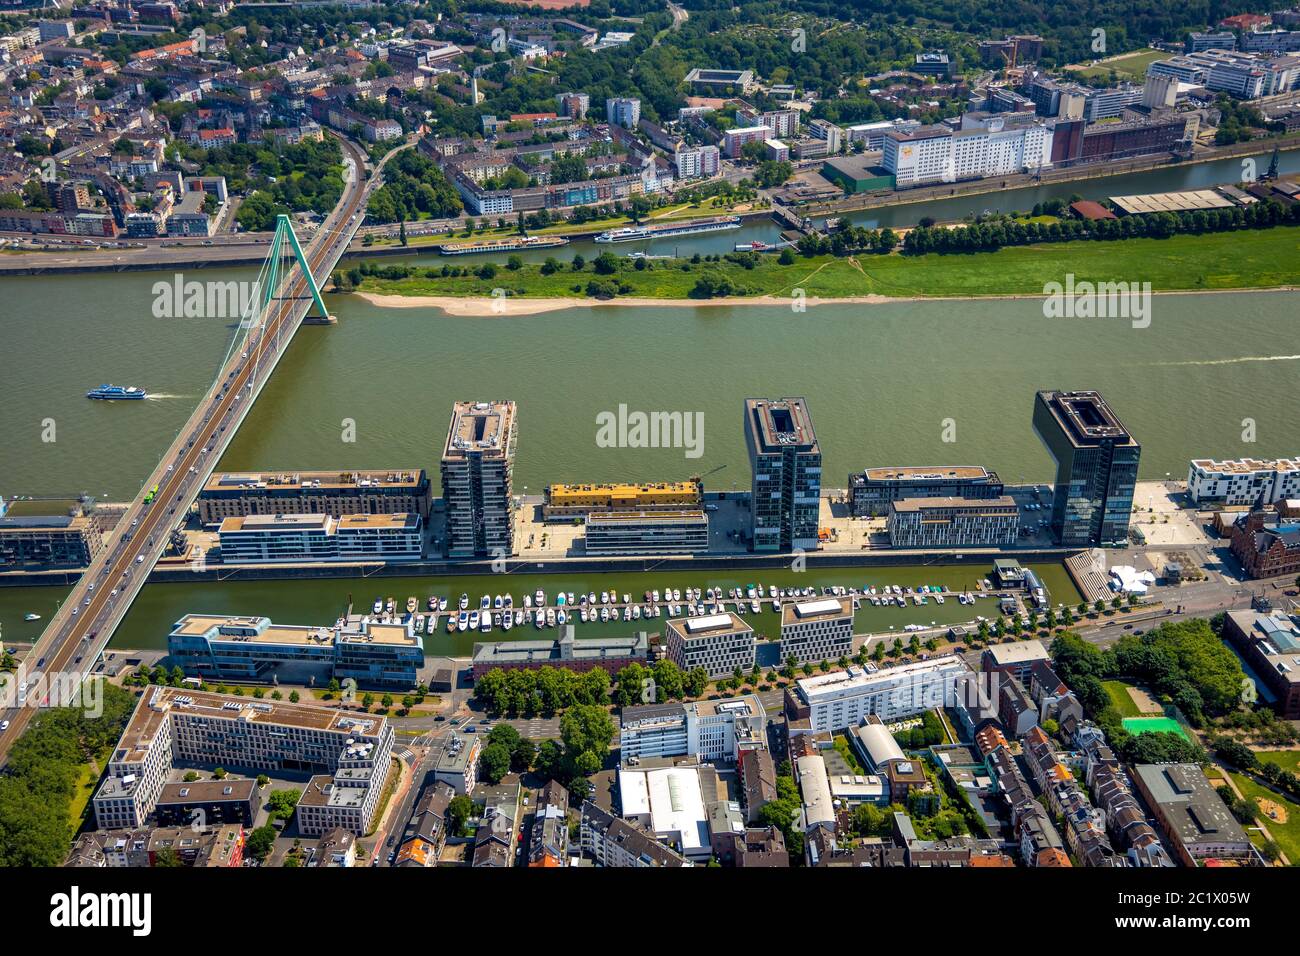 Kranhaeuser en el río Rin, puente Severinsbruecke de B55, 05.06.2019, vista aérea, Alemania, Renania del Norte-Westfalia, Renania, Colonia Foto de stock